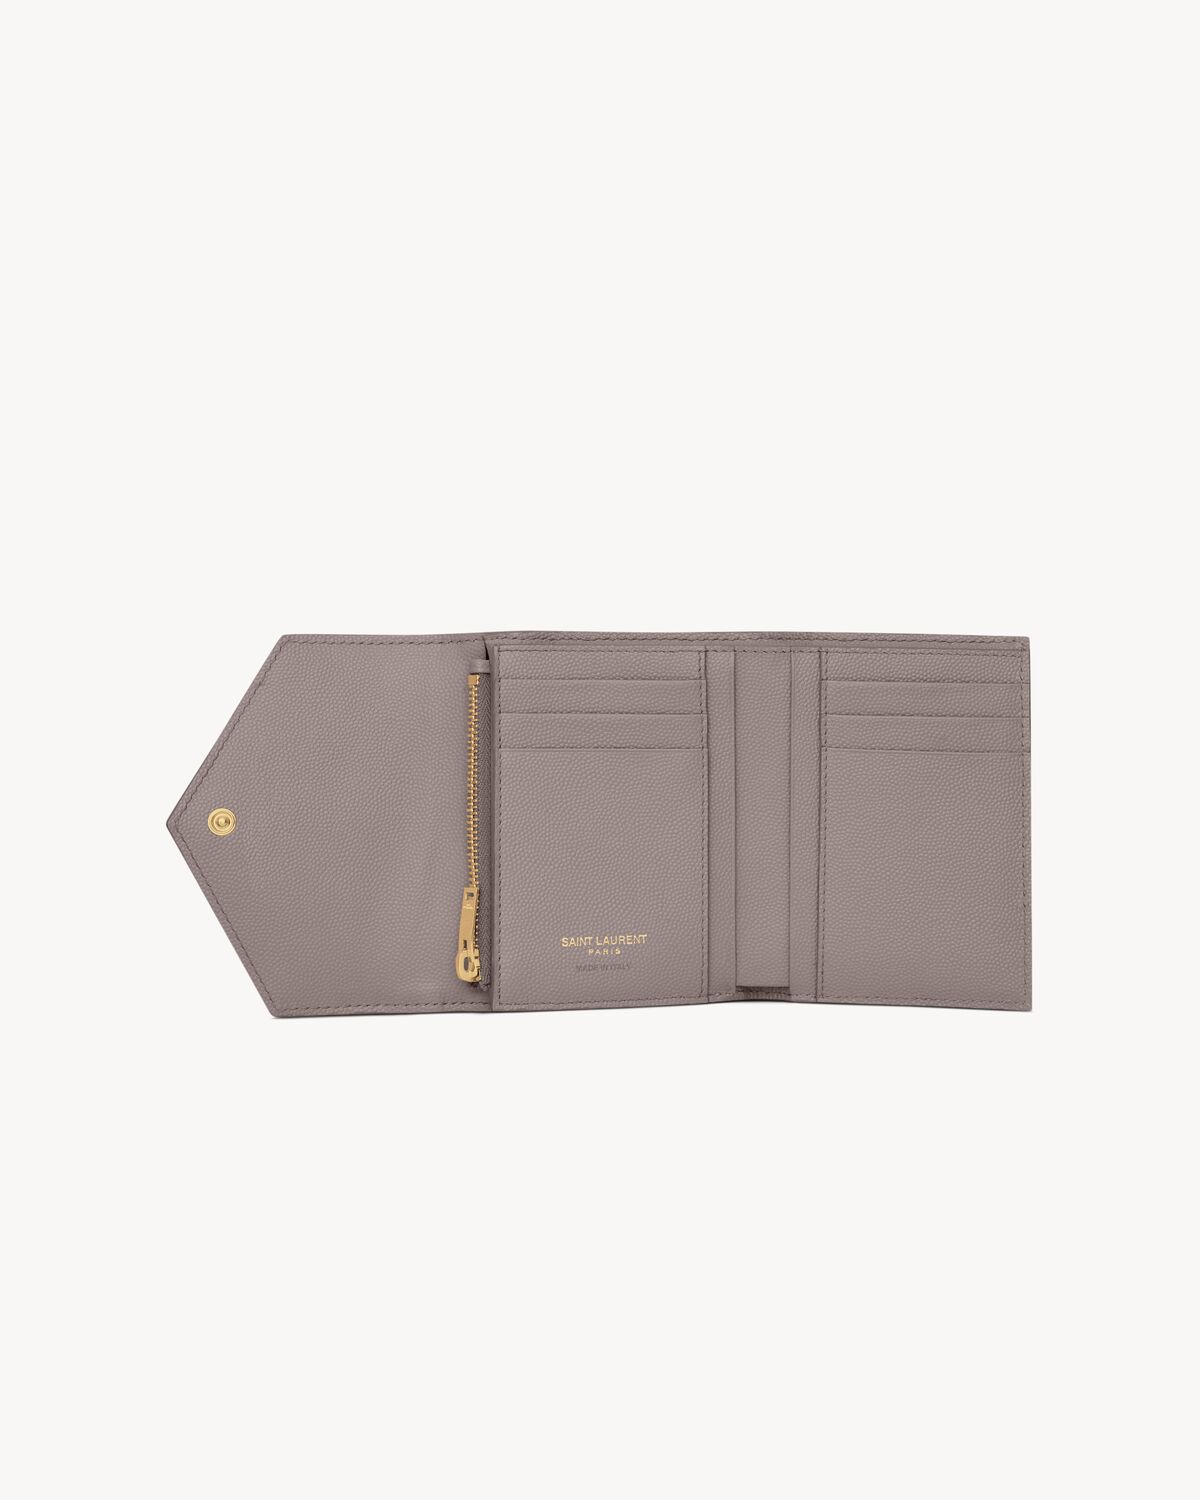 CASSANDRE MATELASSÉ compact tri fold wallet in grain de poudre leather